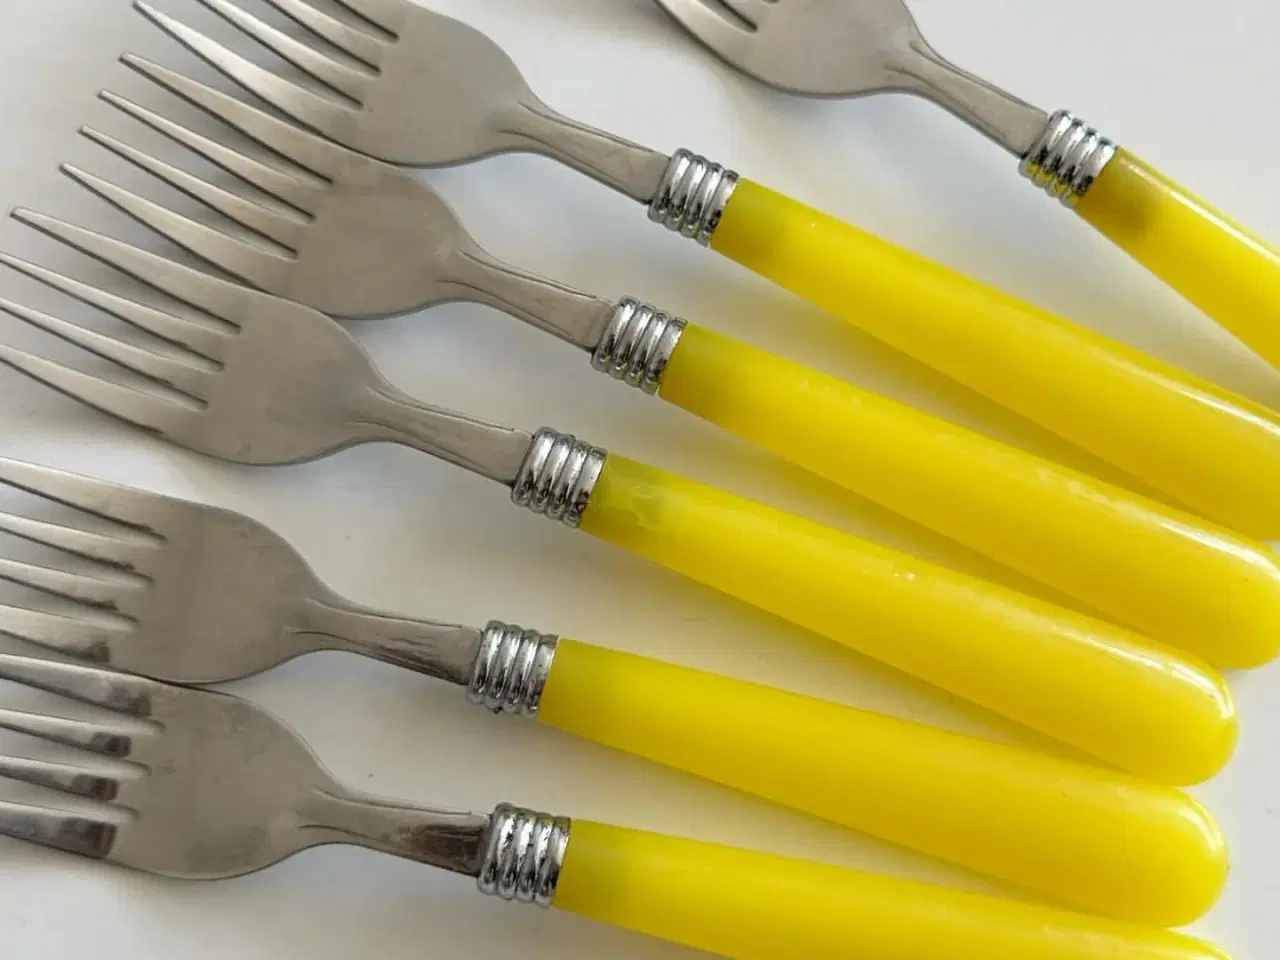 Billede 3 - Retro gafler, stål og gul plast, 6 stk samlet